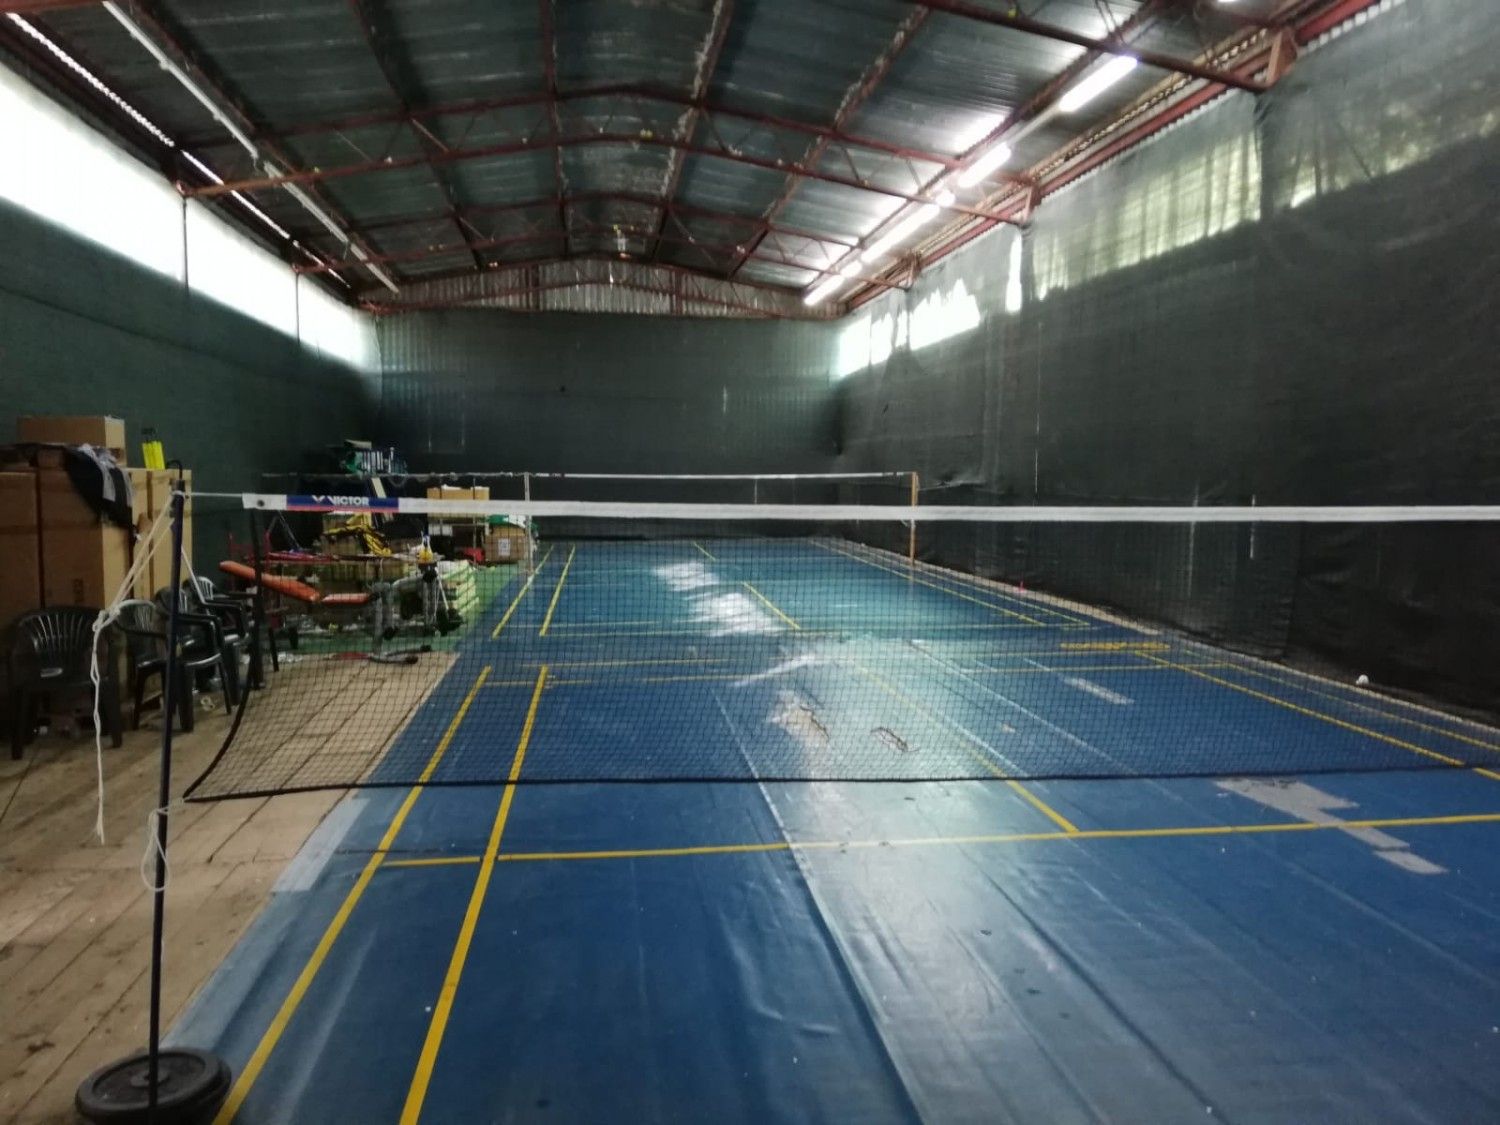 Dvadeset godina badmintonaši treniraju u skladištu, uvjeti su katastrofalni (FOTO)